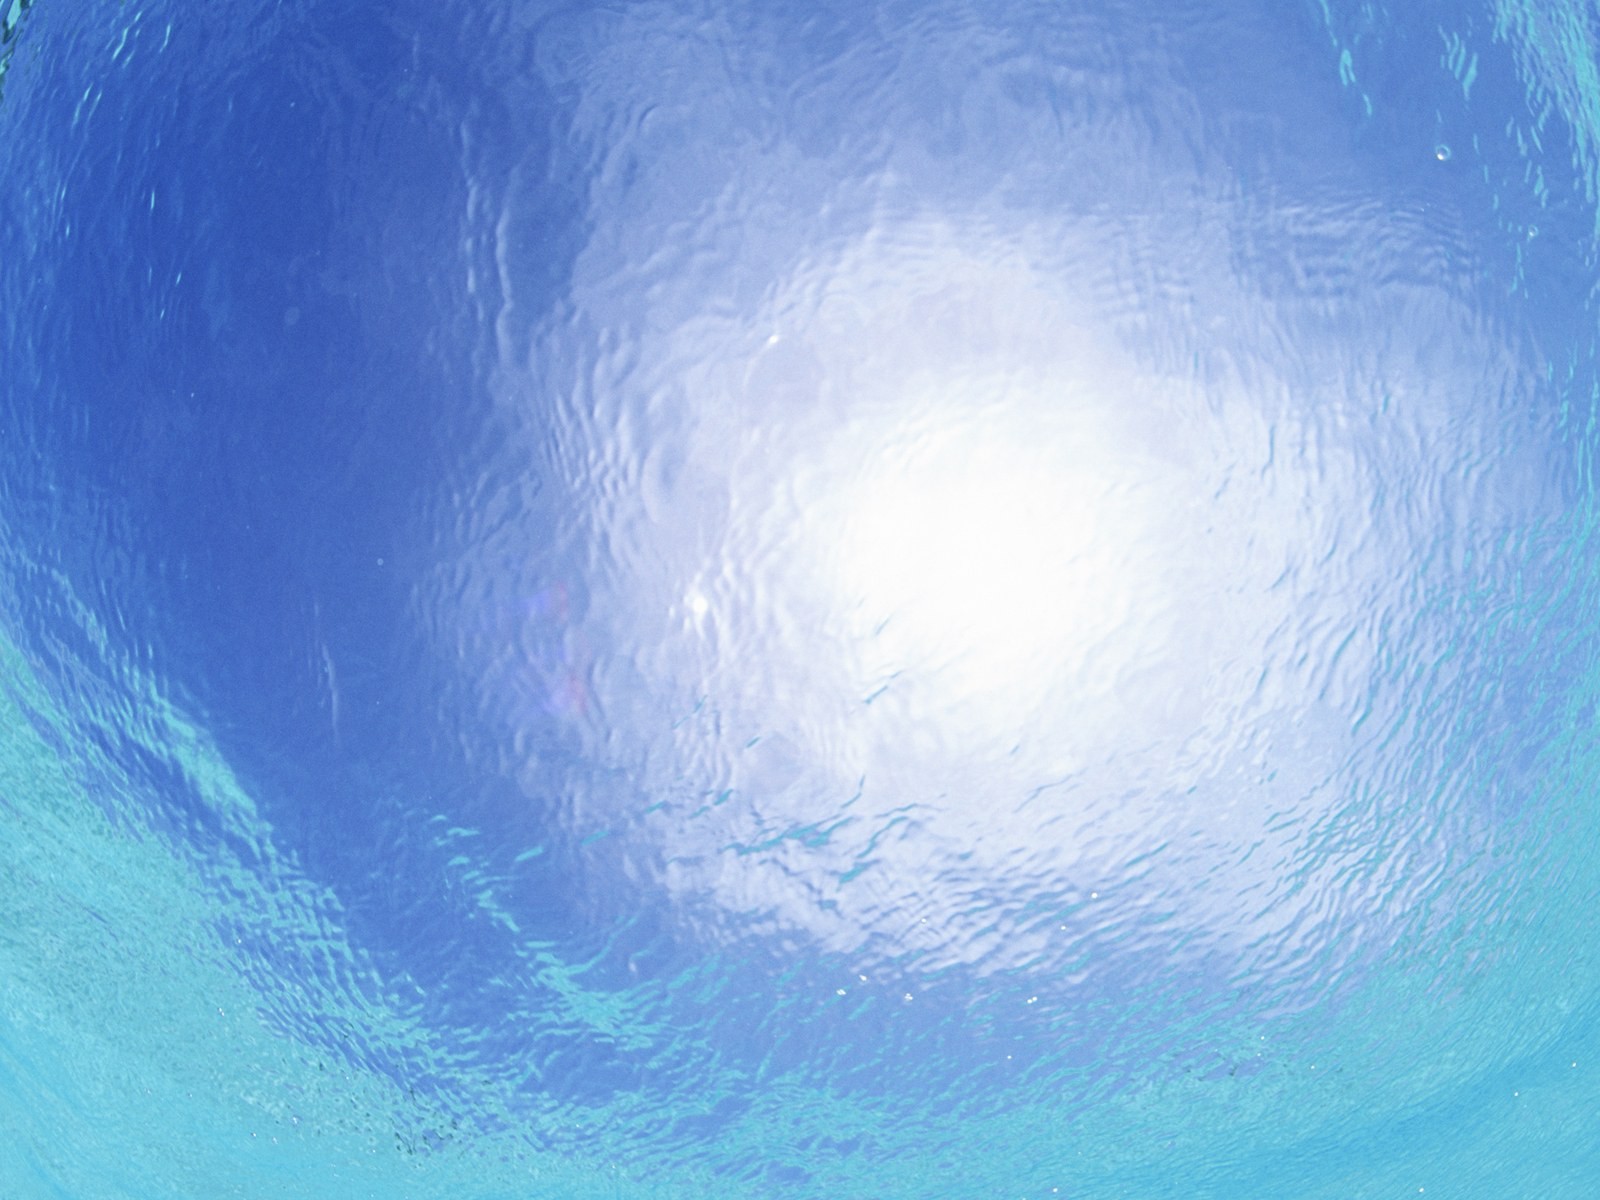 Maledivy vody a modrou oblohu #16 - 1600x1200